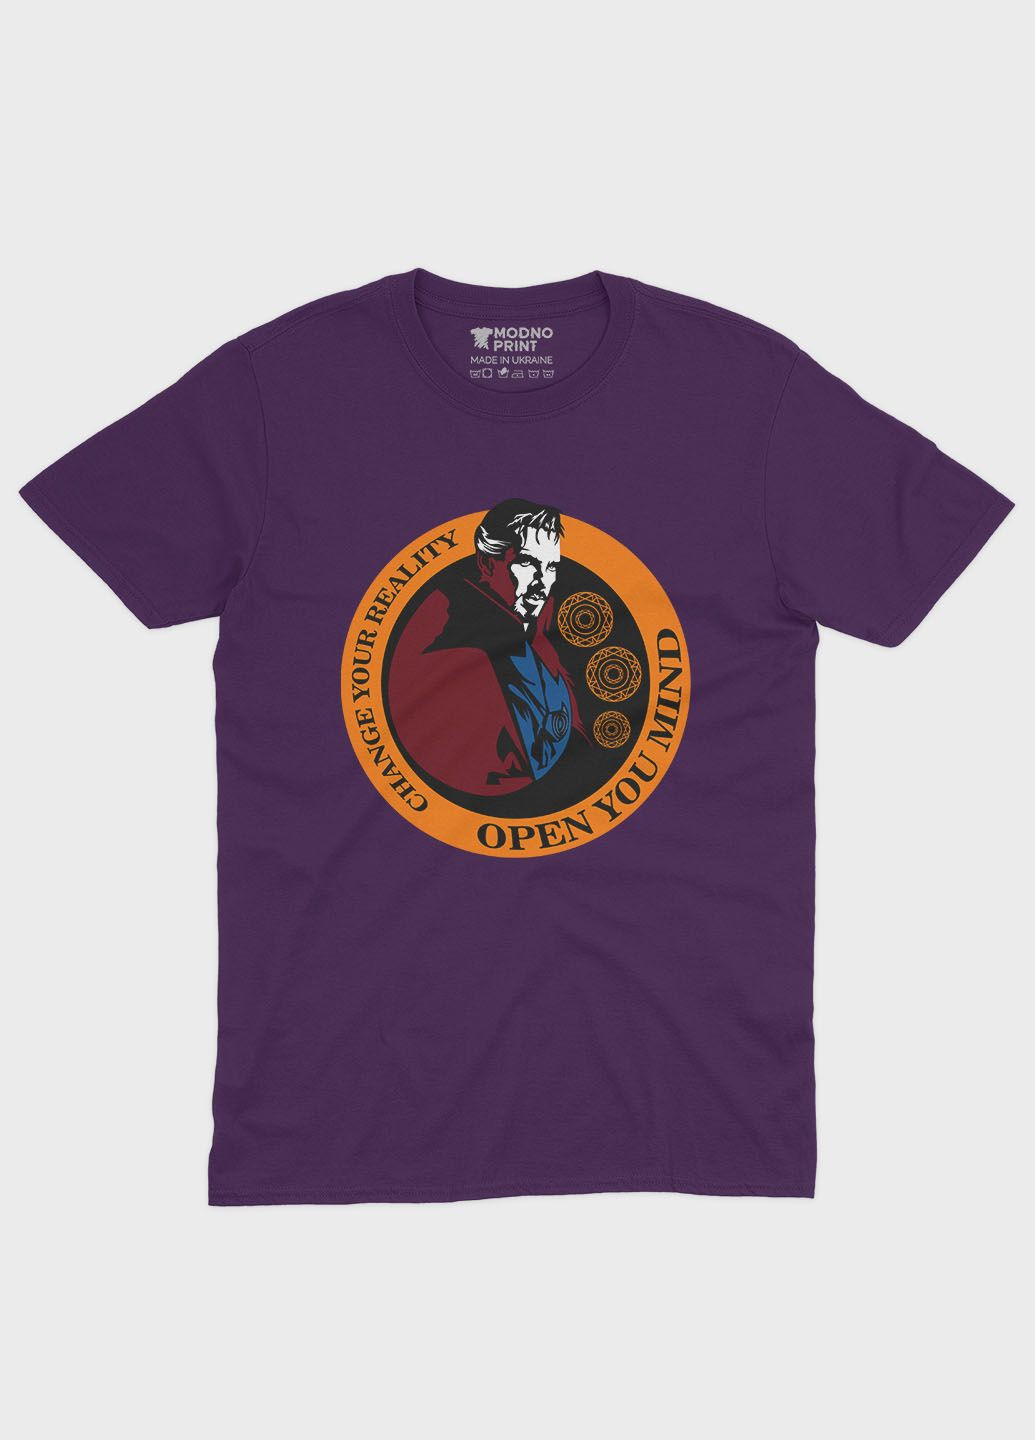 Фиолетовая демисезонная футболка для мальчика с принтом супергероя - доктор стрэндж (ts001-1-dby-006-020-005-b) Modno